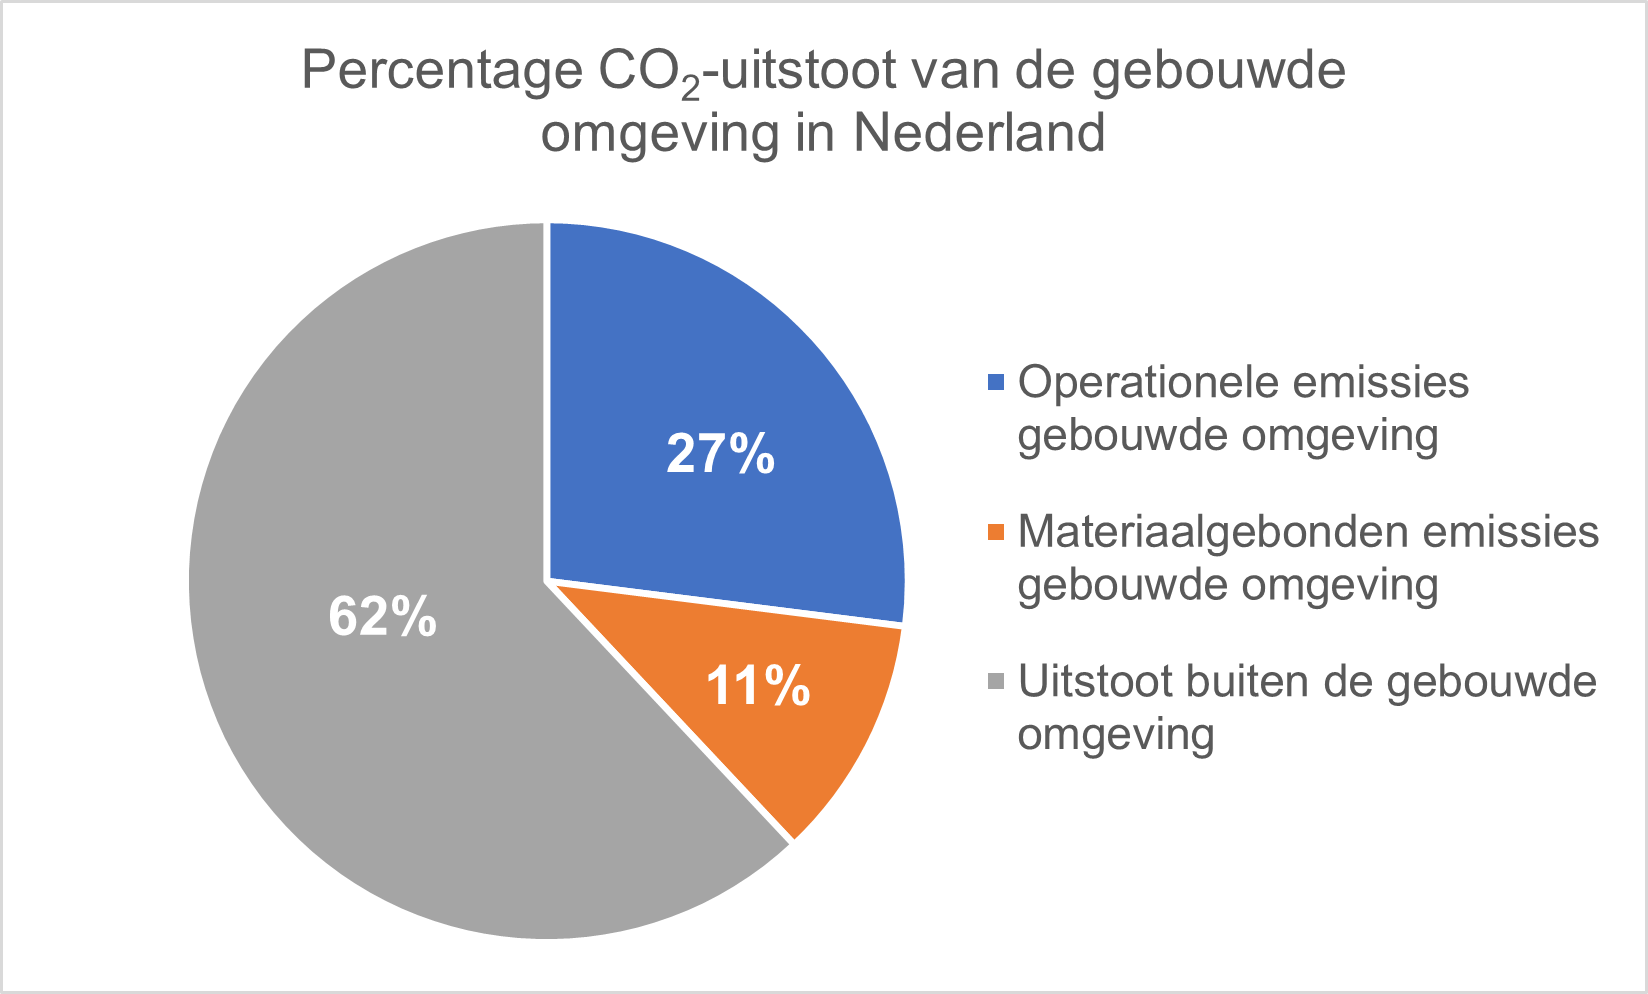 11% uitstoot van de totale Nederlandse CO2-uitstoot komt van materiaalgebonden emissies in de gebouwde omgeving